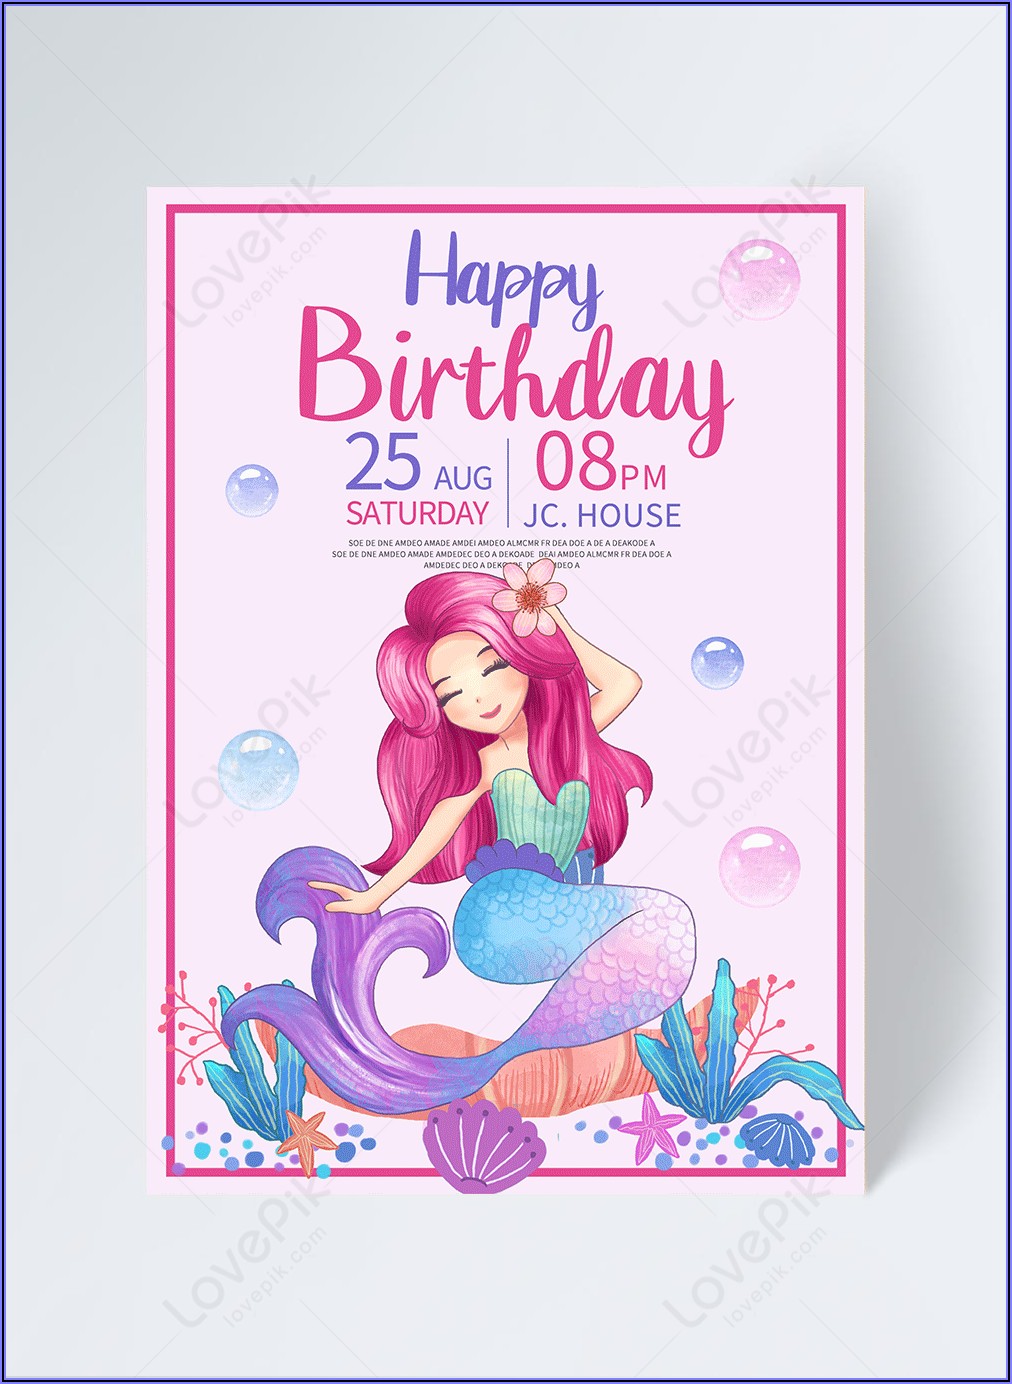 Mermaid Birthday Invitation Template Free